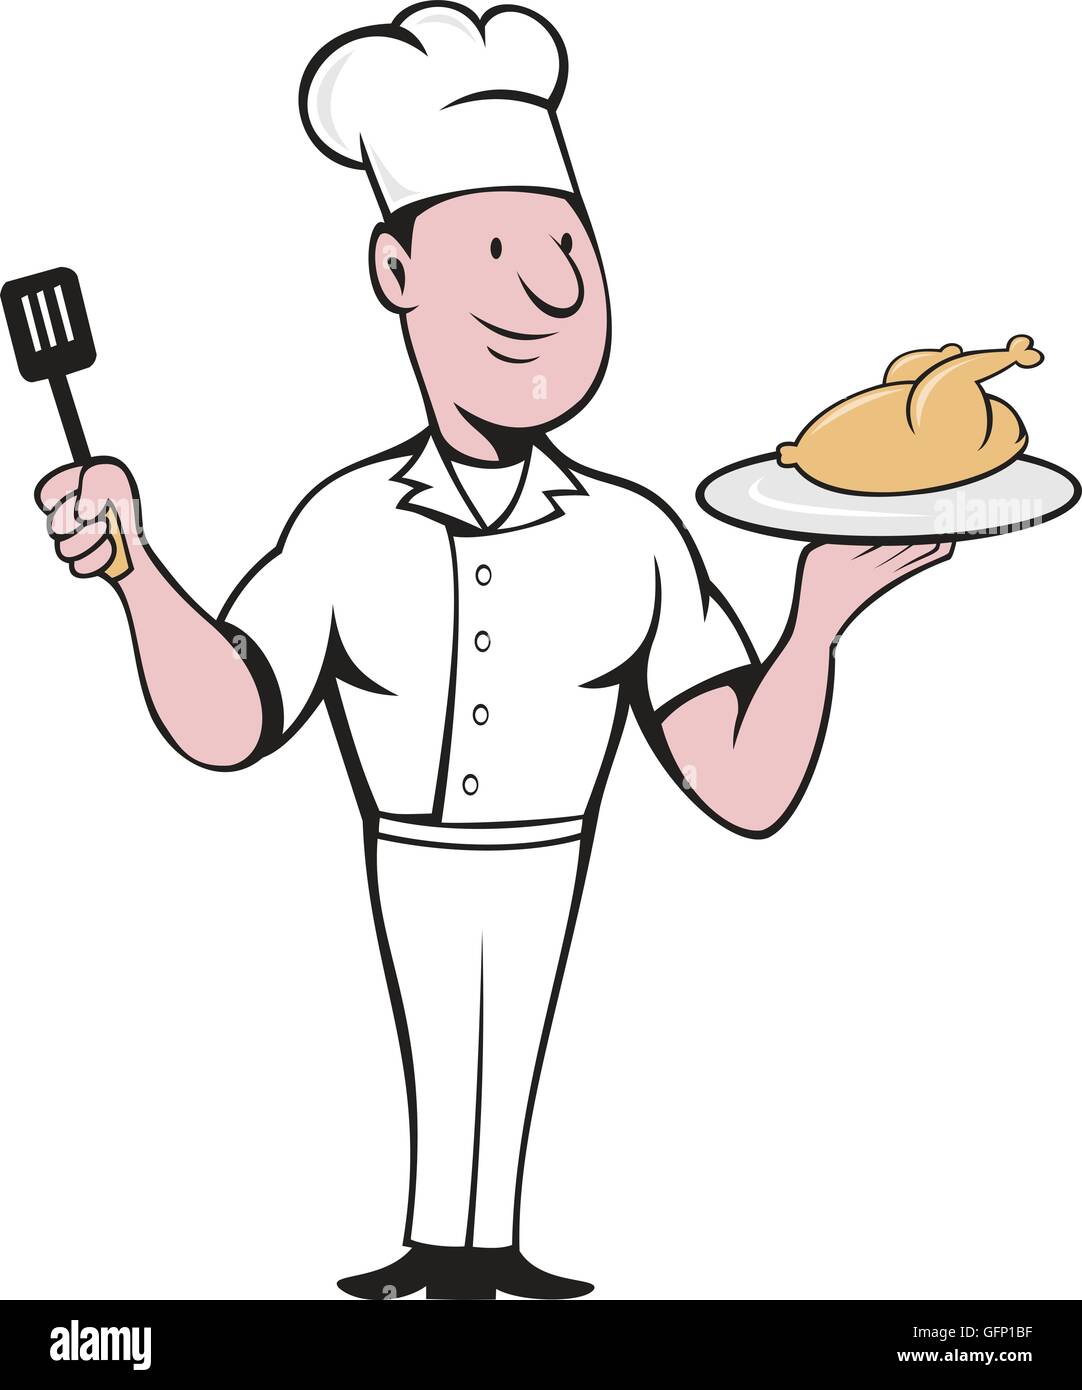 Abbildung eines Küchenchefs Kochen stehen Portion gebratenes Huhn auf einer Platte einerseits und mit einem Spatel auf der anderen Seite betrachtet, von vorne am isolierten weißen Hintergrund im Cartoon-Stil gemacht. Stock Vektor